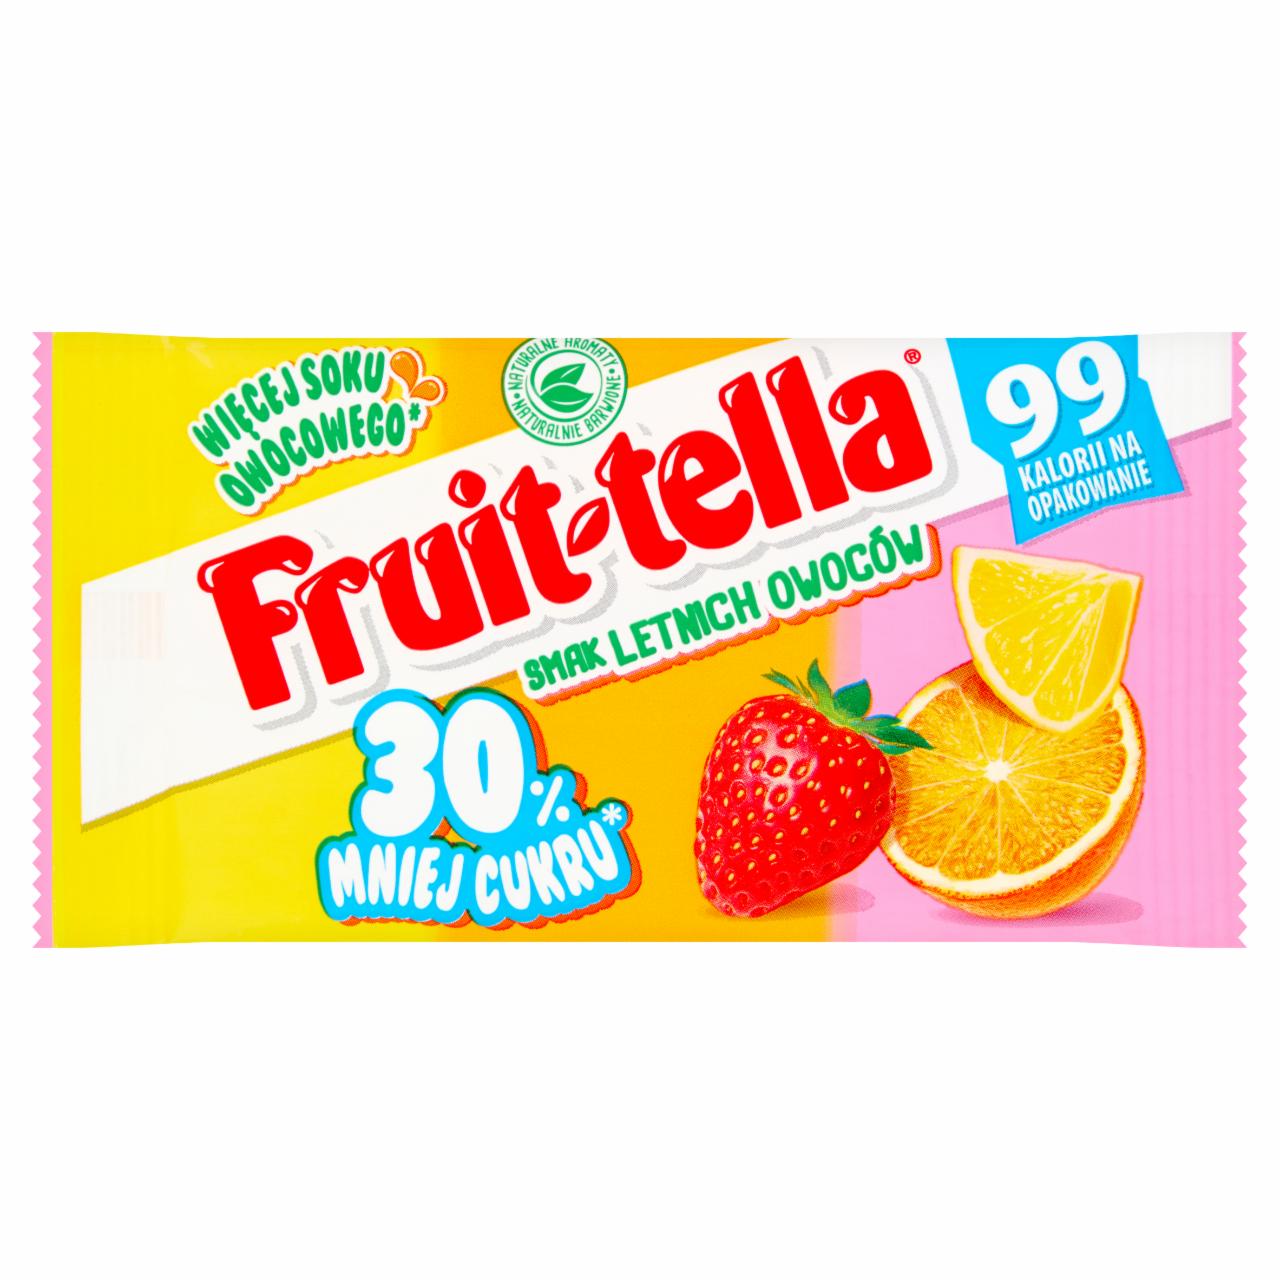 Zdjęcia - Fruittella Cukierki do żucia smak letnich owoców 28 g